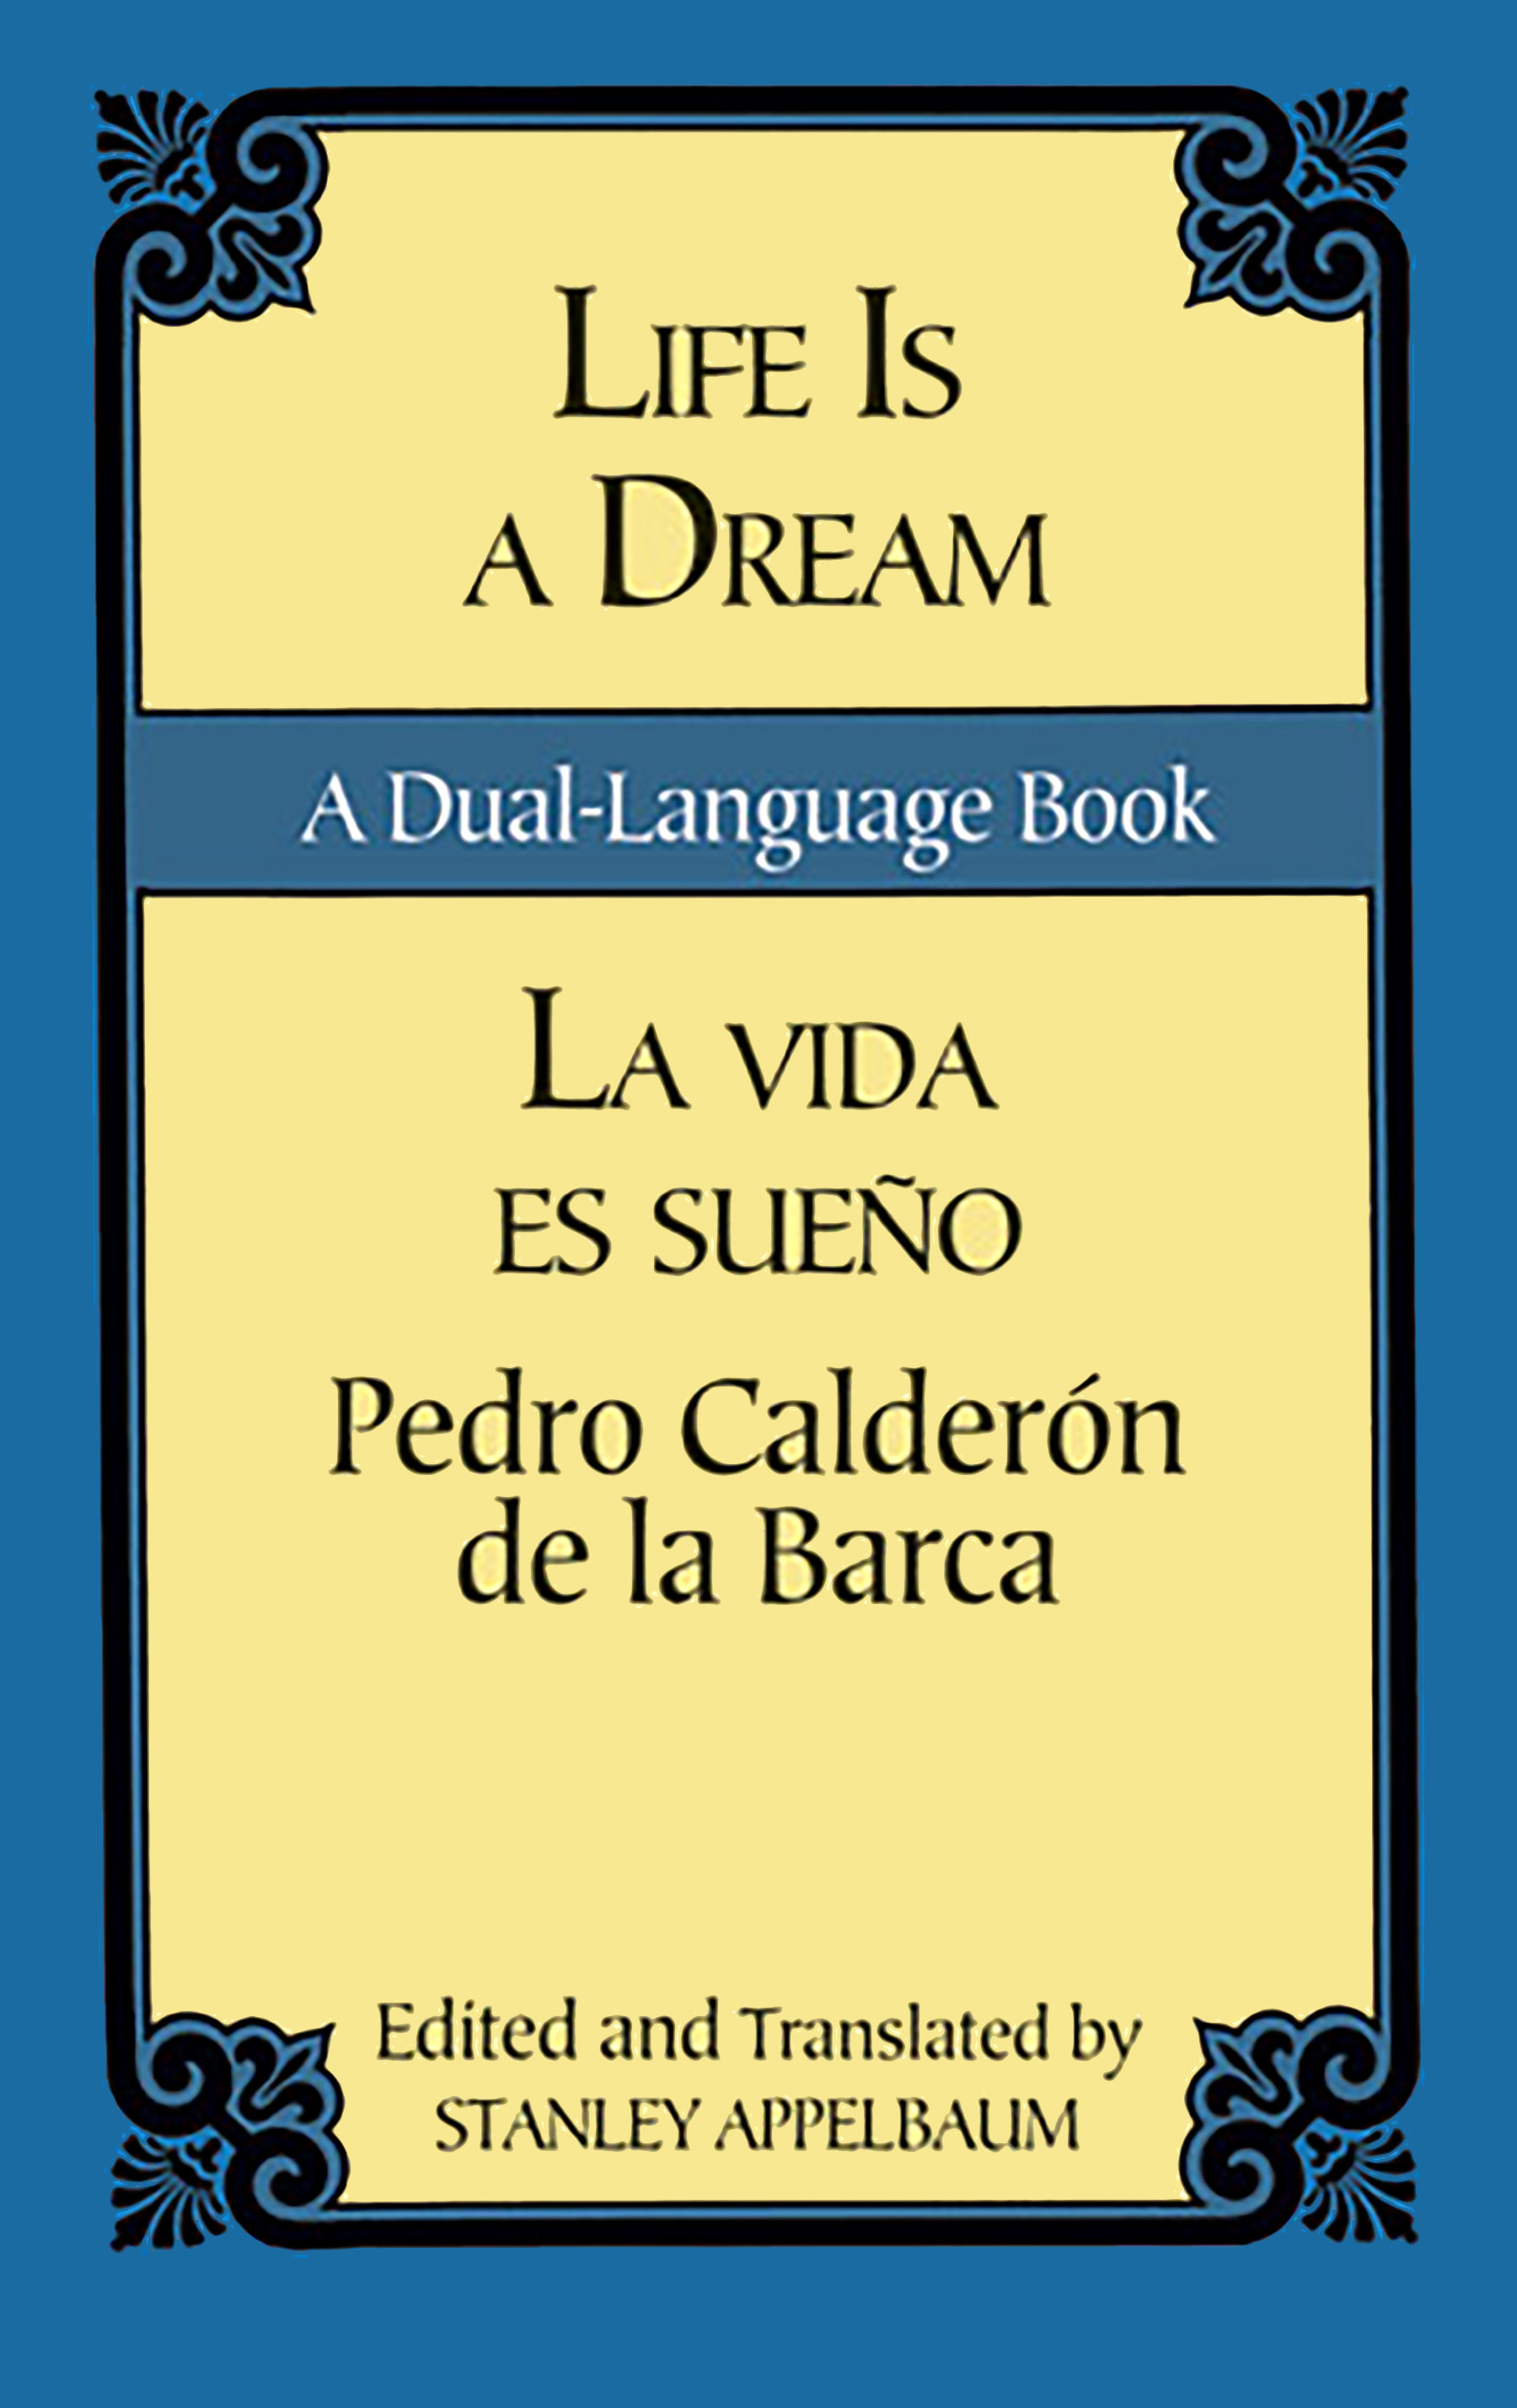 Pedro Calderón de la Barca, La vida es sueño